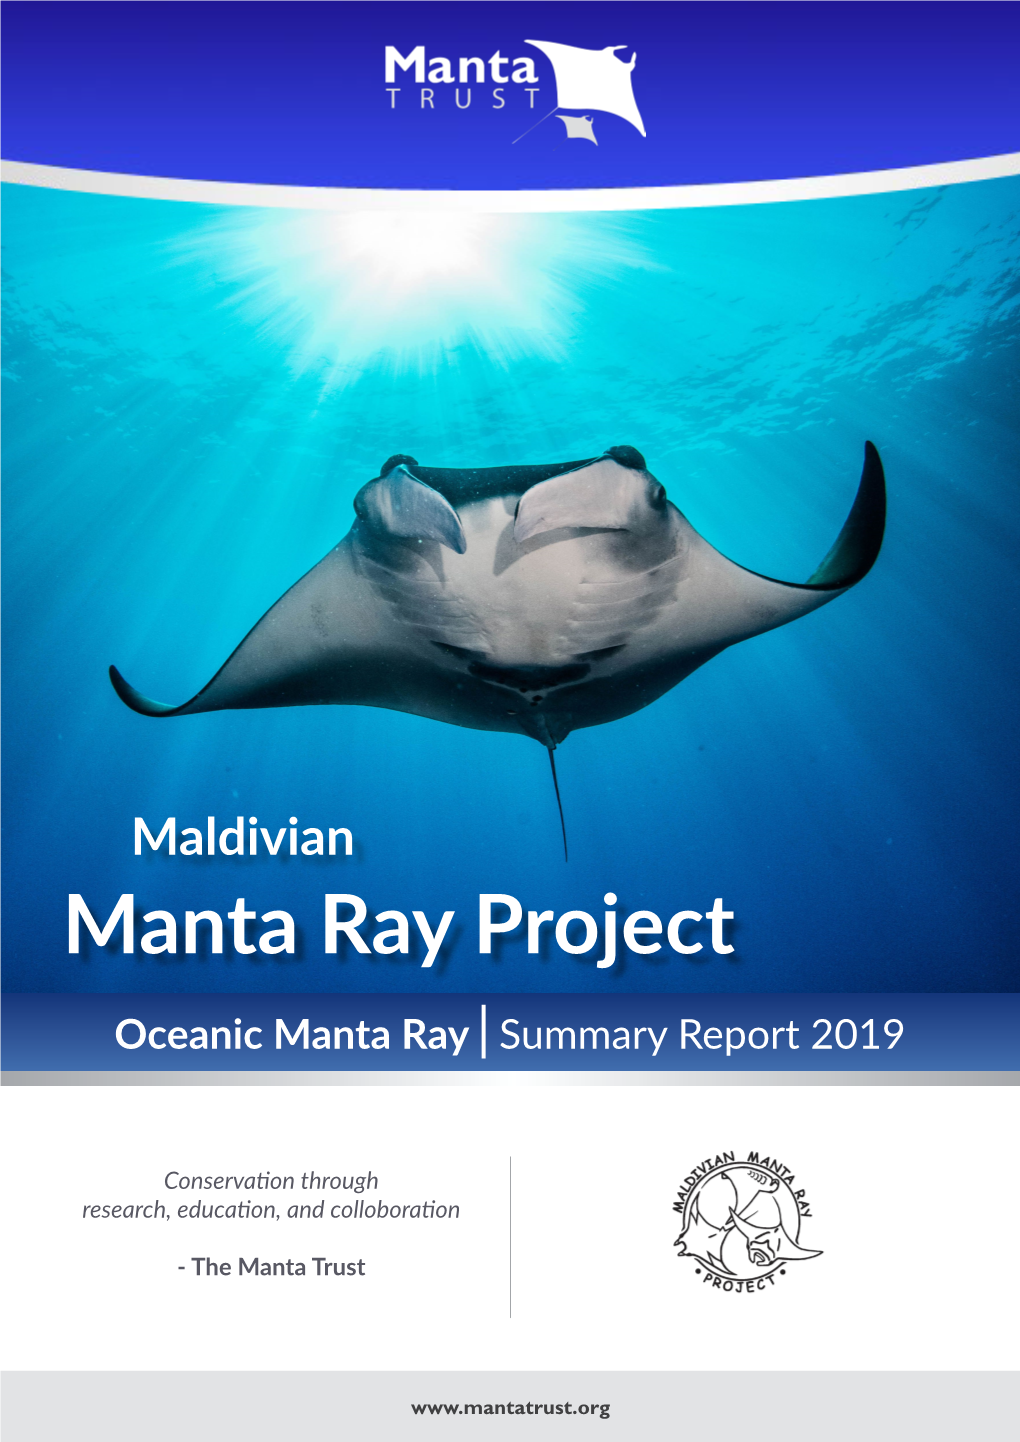 Oceanic Manta Ray |Summary Report 2019